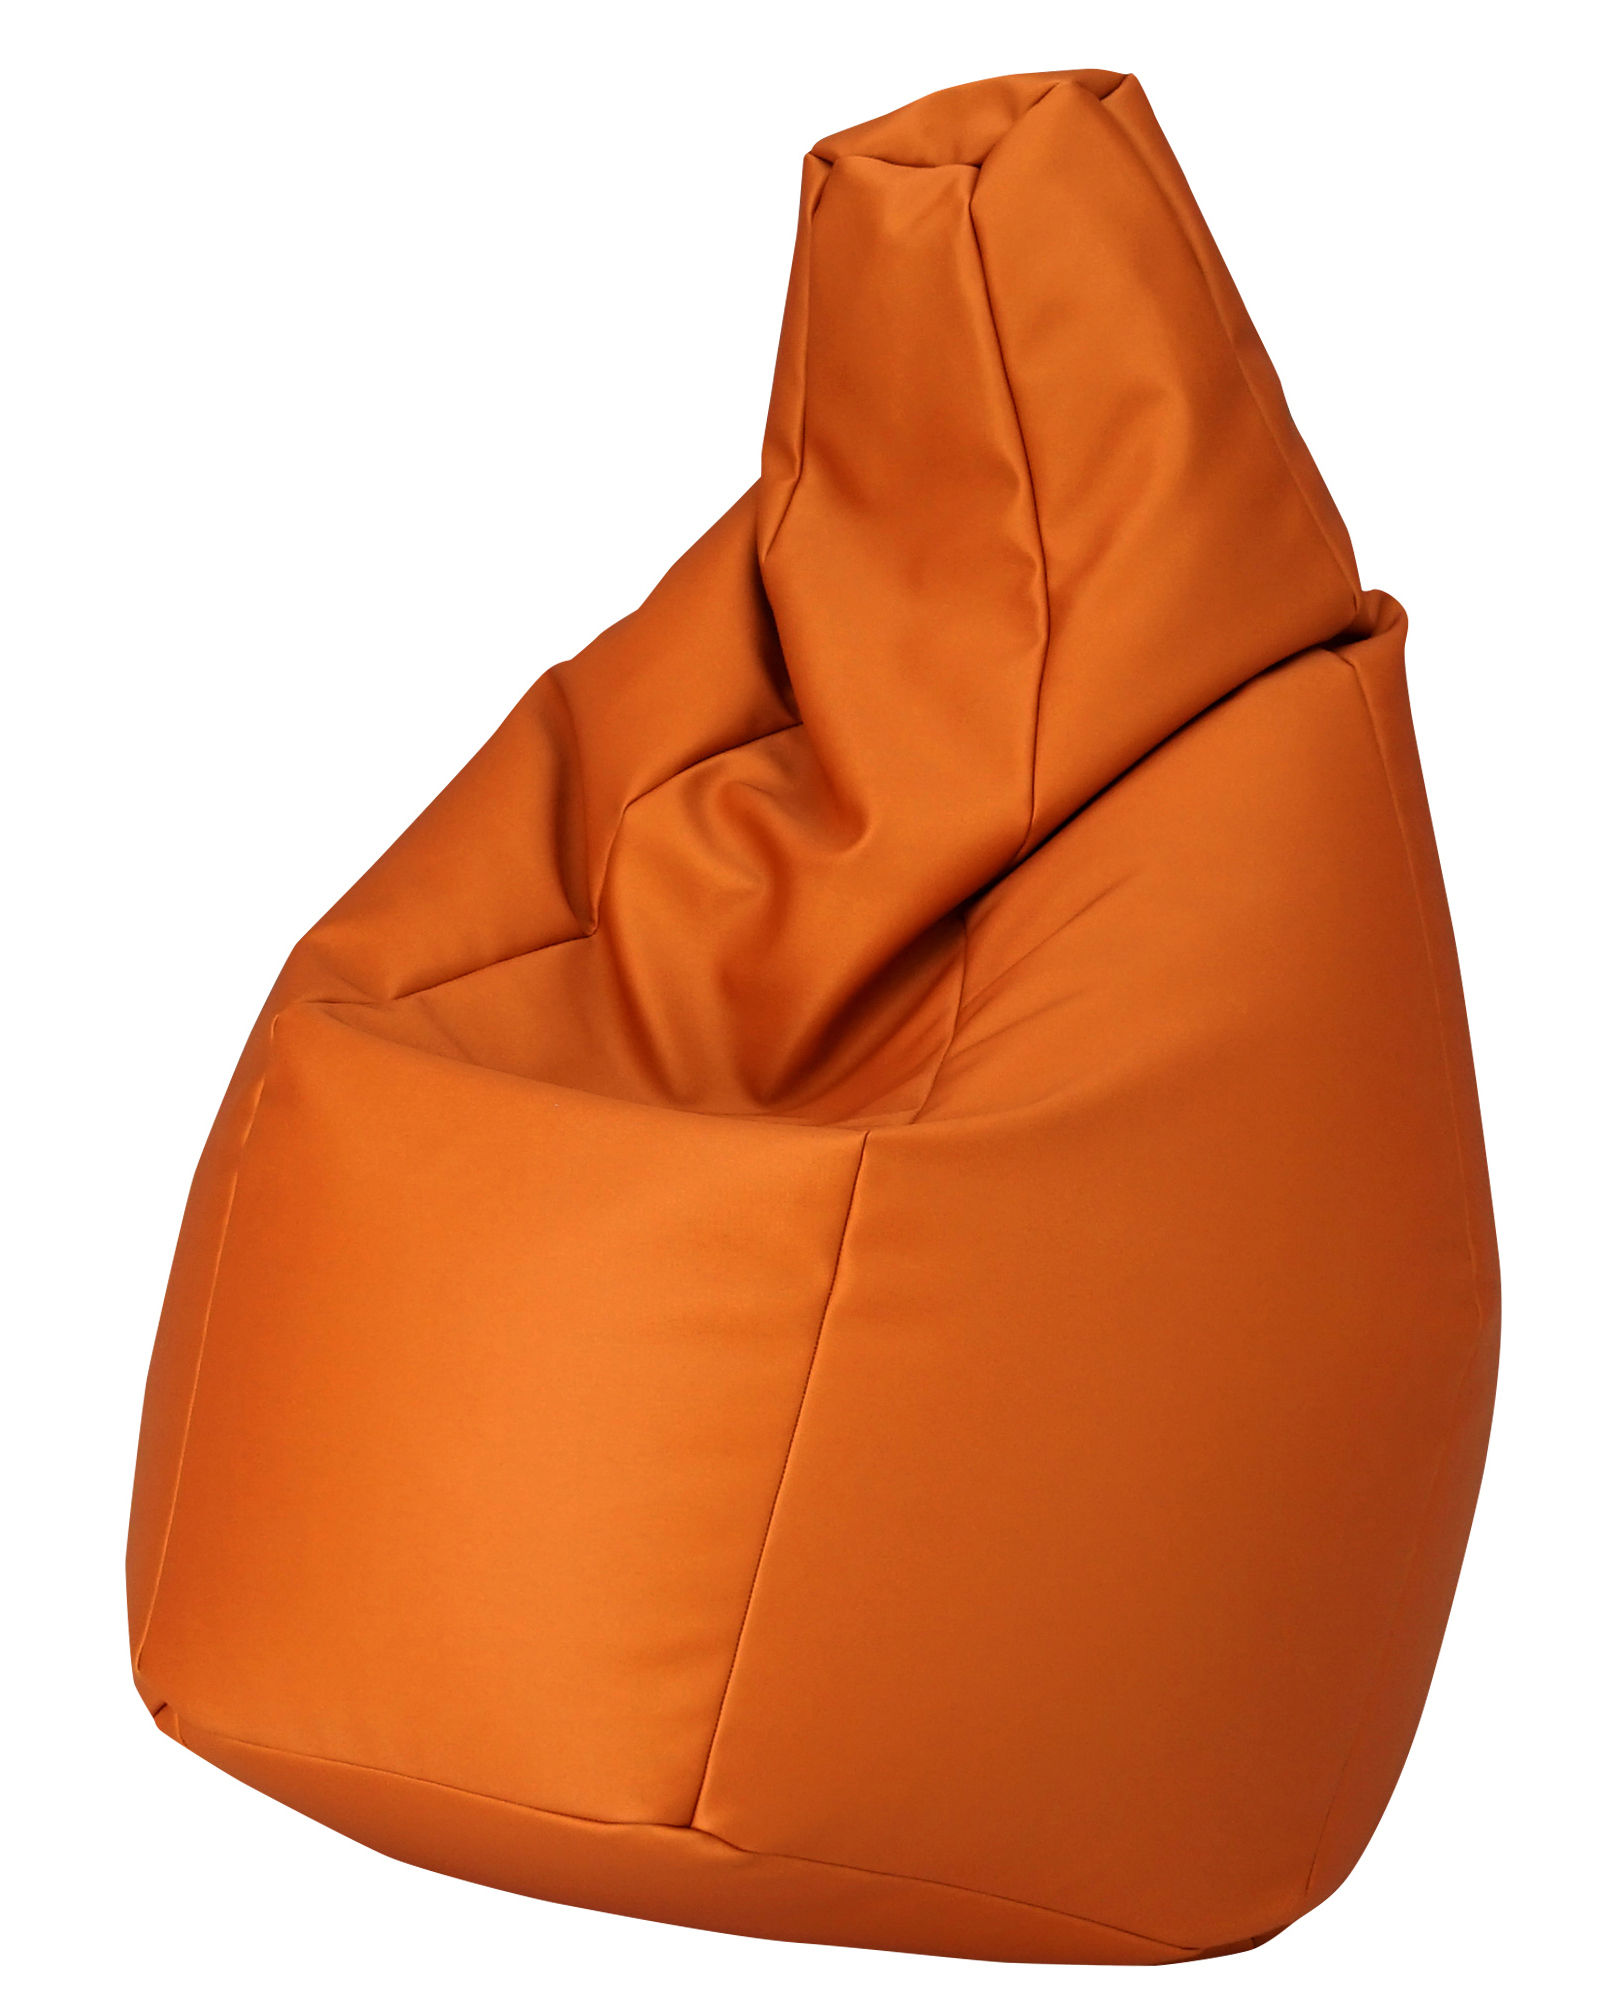 Orange Sacco Outdoor Pouf design Cesare Paolini